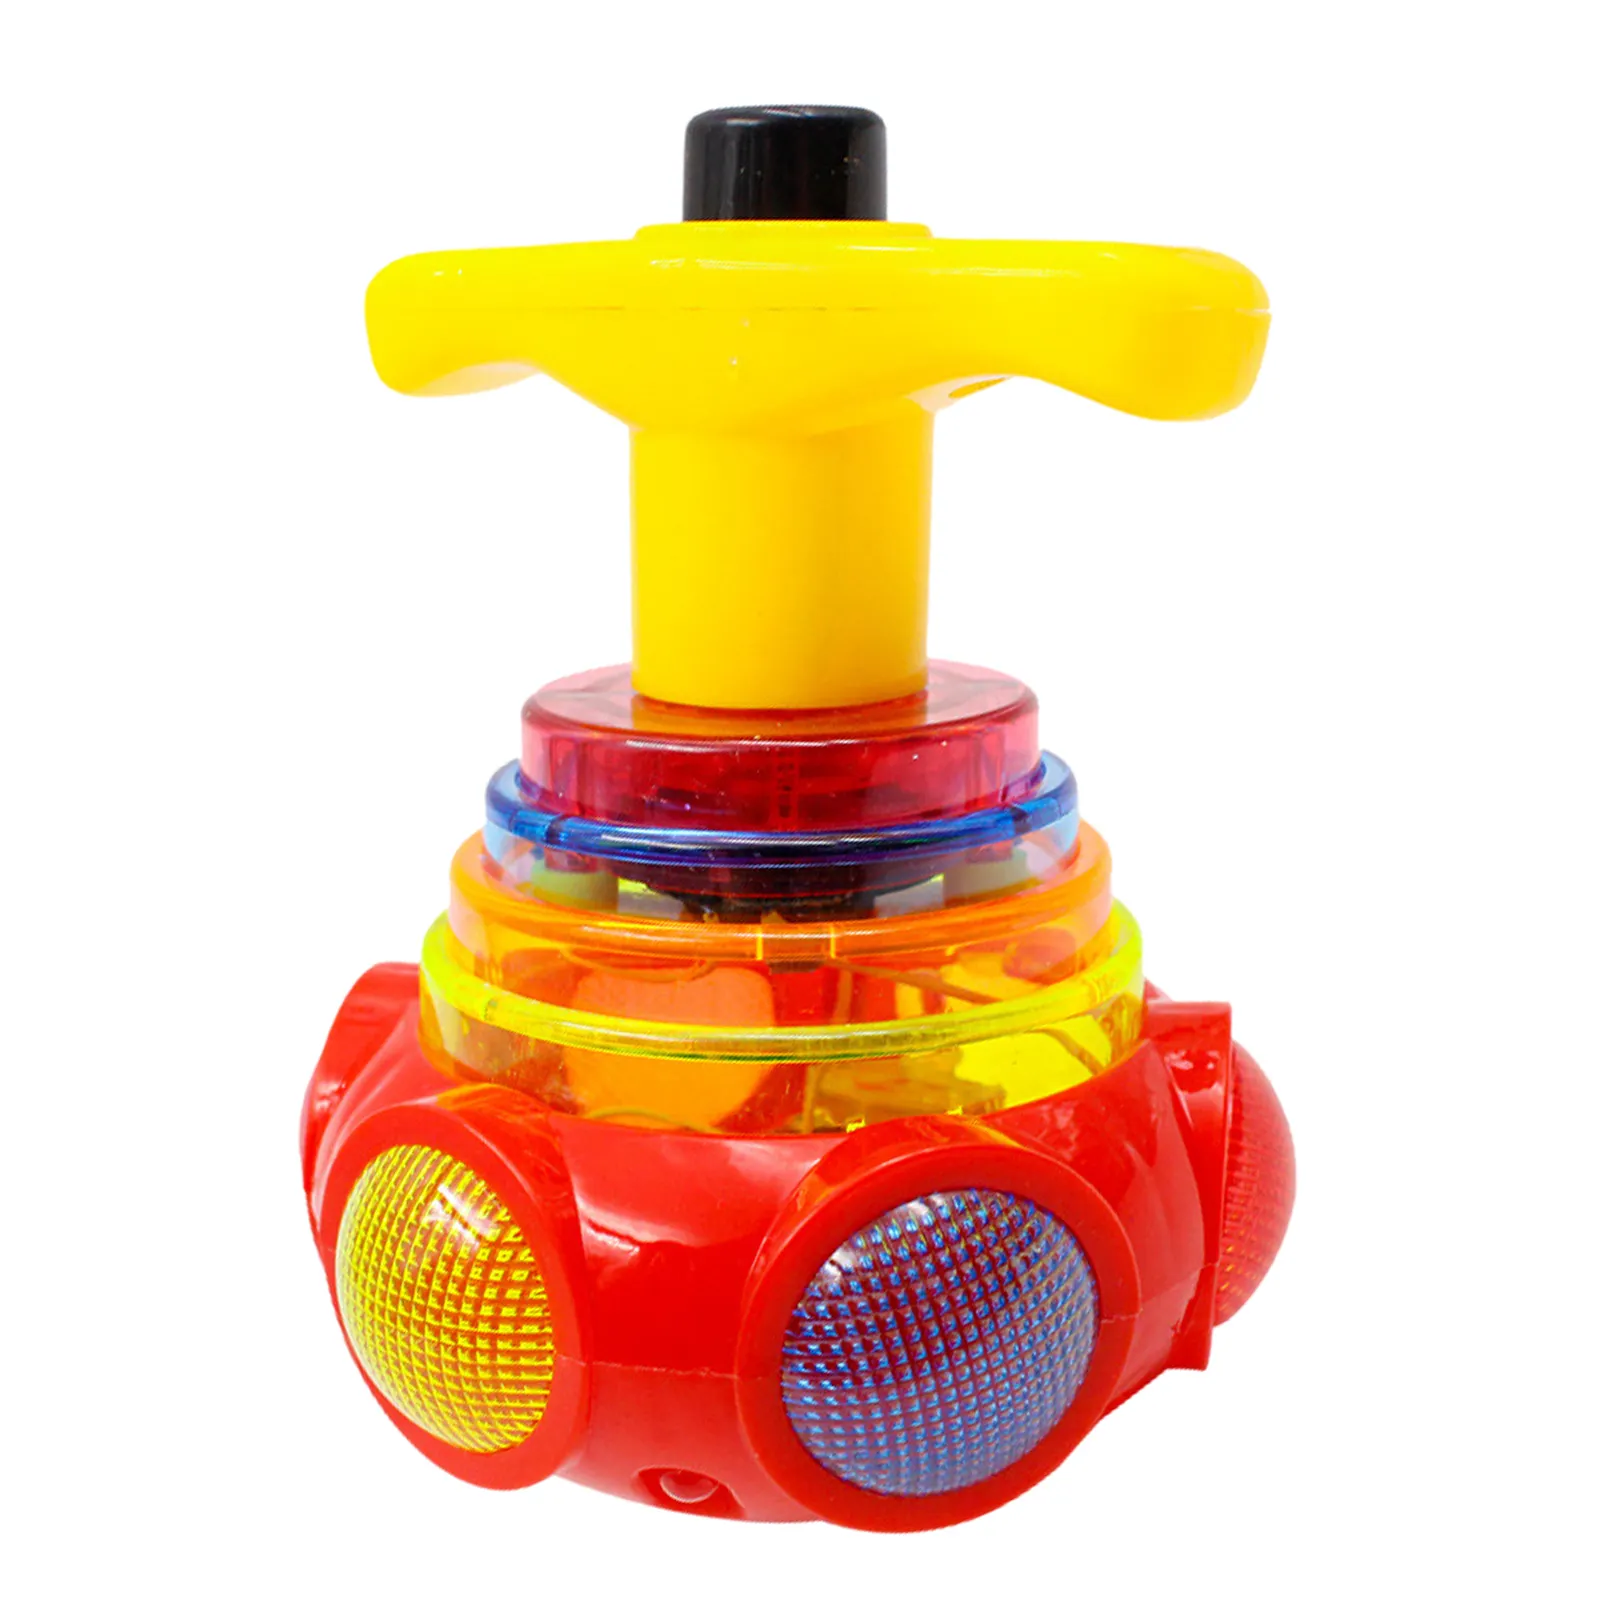 Blinkendes Super-Top-Spielzeug, LED-Top mit Musik für Kinderspiel zeug